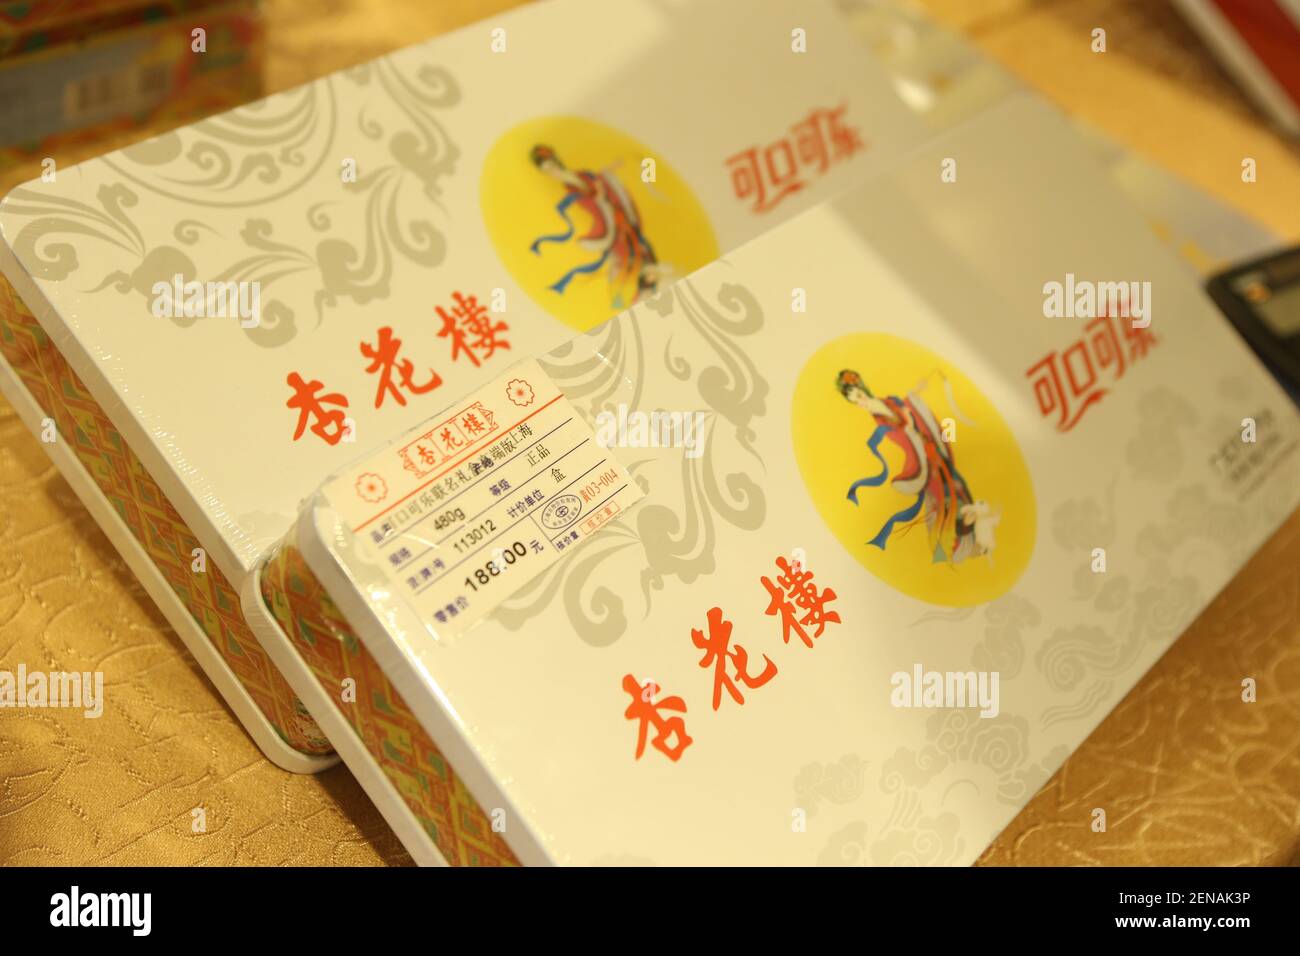 Die Co-Branding-Geschenkbox, bestehend aus Mooncake von Shanghai Xinghualou Food and Beverage Co., Ltd und Coke der Coca-Cola Company aus den Vereinigten Staaten, wird in Shanghai China am 14. Juli 2019 eingeführt. (Foto von Wang Yadong - Imaginechina/Sipa USA) Stockfoto